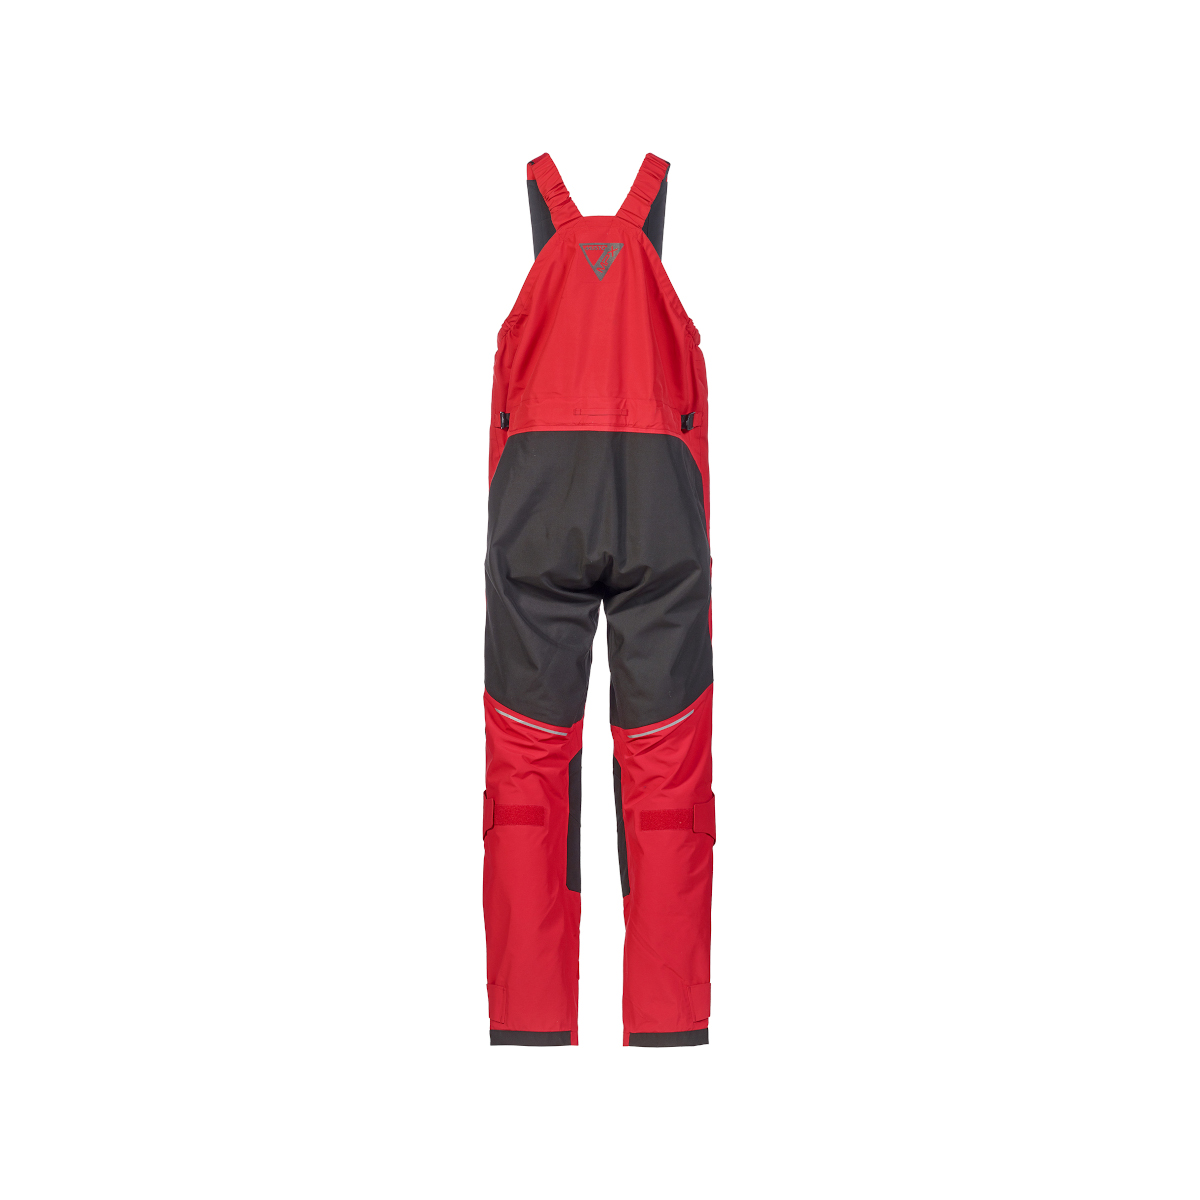 Musto MPX Gore-Tex Pro Offshore 2.0 pantalon de voile homme rouge, taille XXL